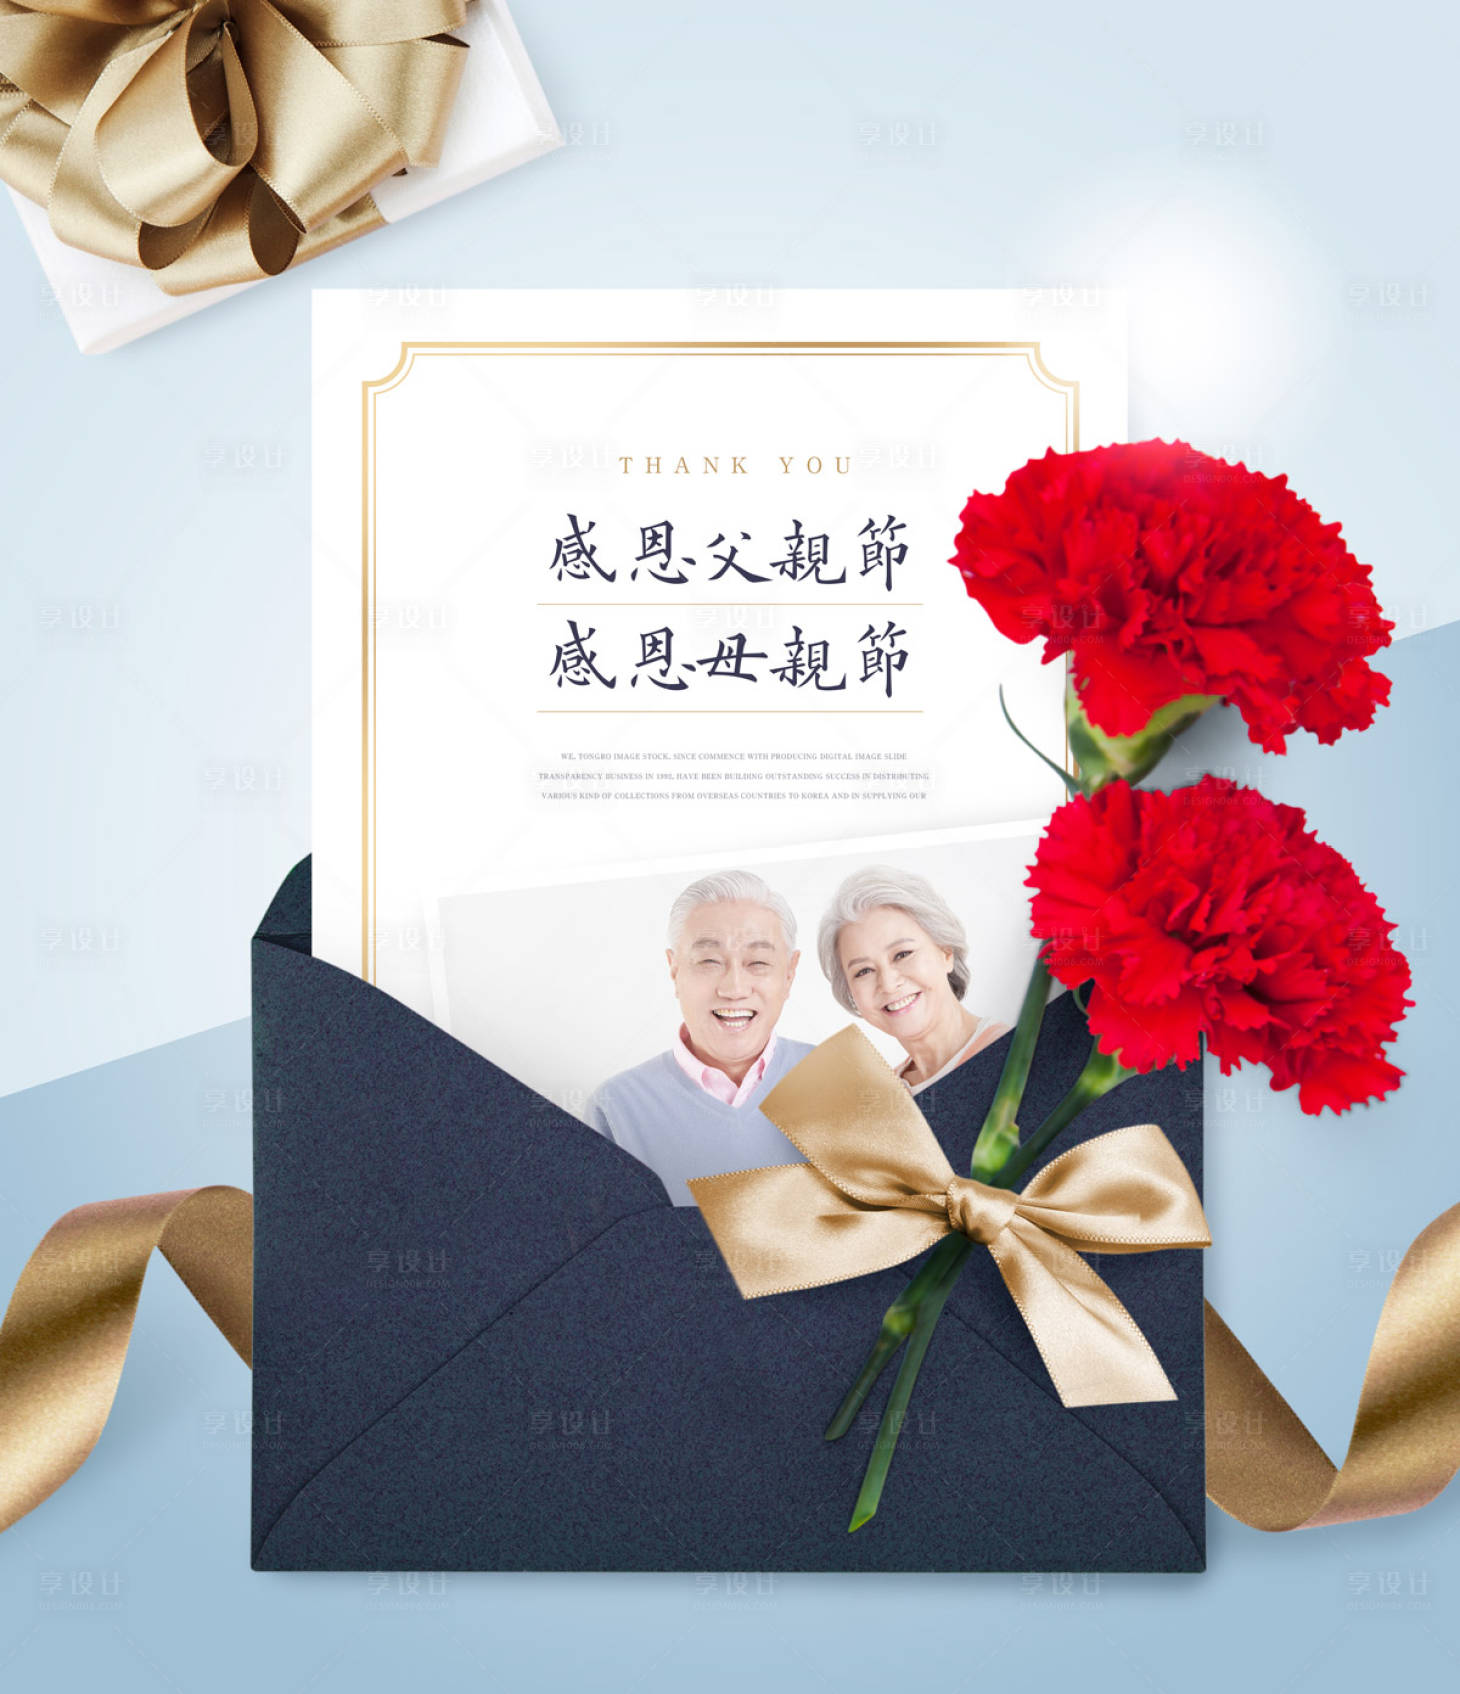 粉蓝色花卉卡通感恩节节日宣传中文贺卡 - 模板 - Canva可画